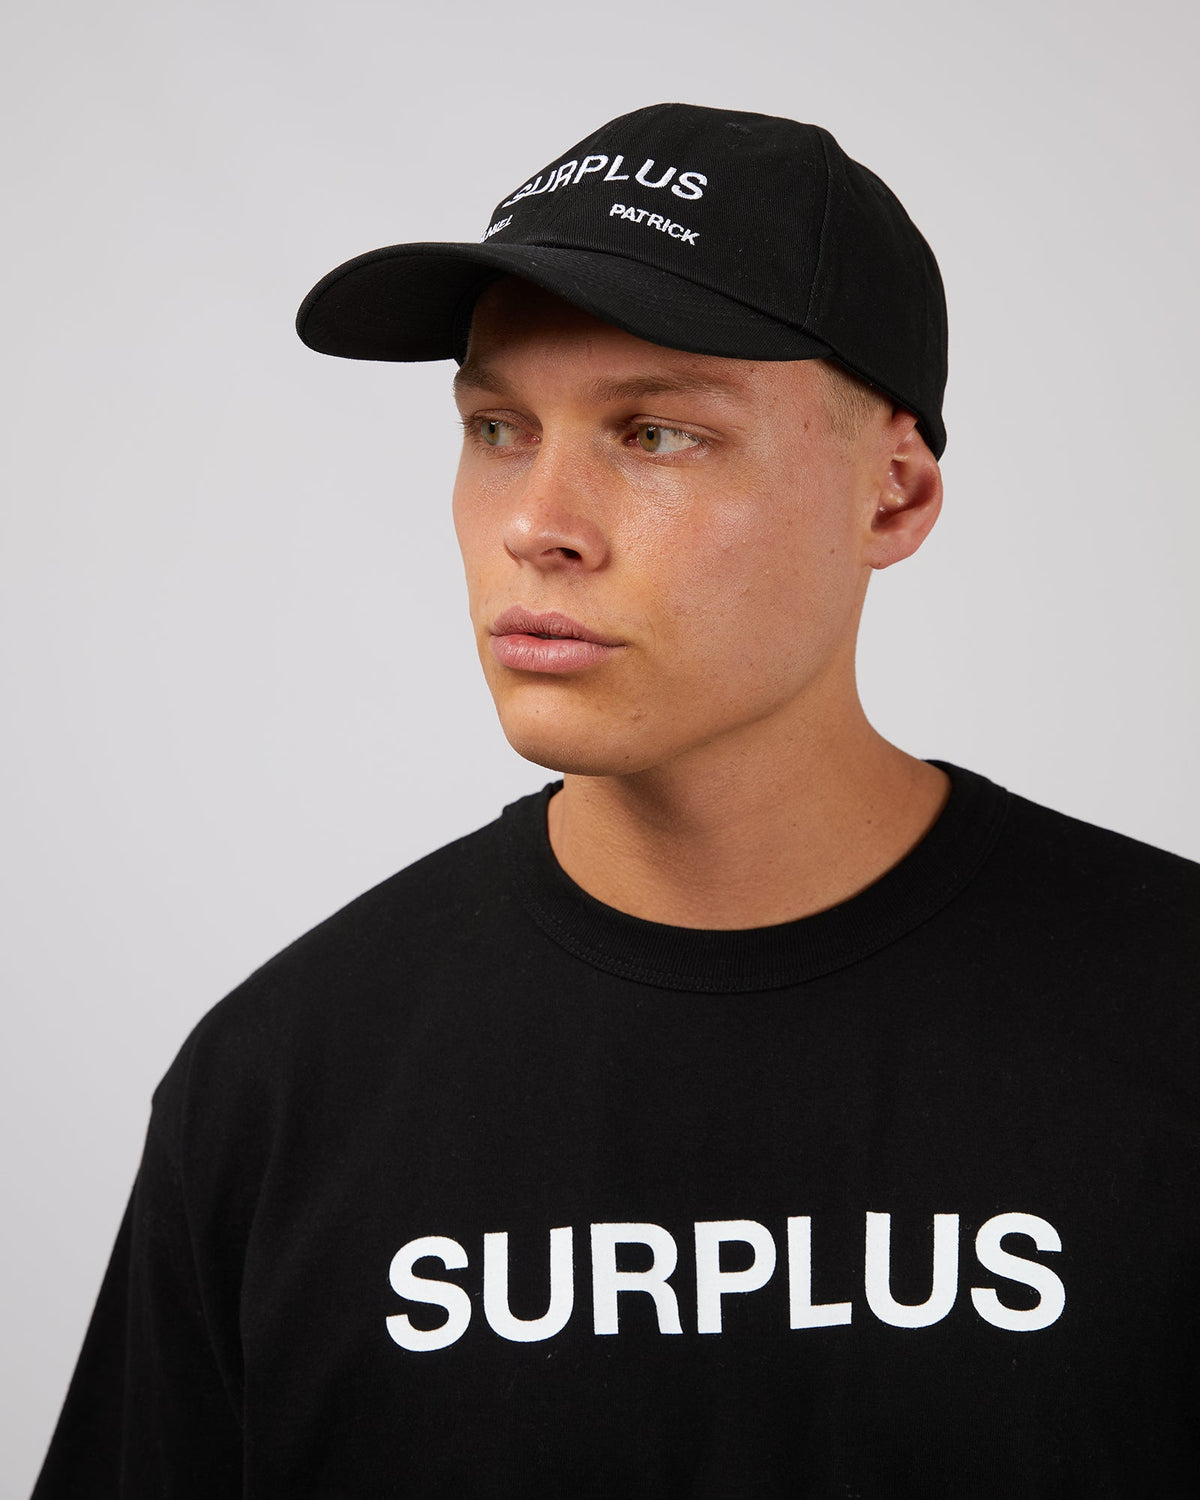 Surplus Daniel Patrick-Surplus Ball Cap Black-Edge Clothing